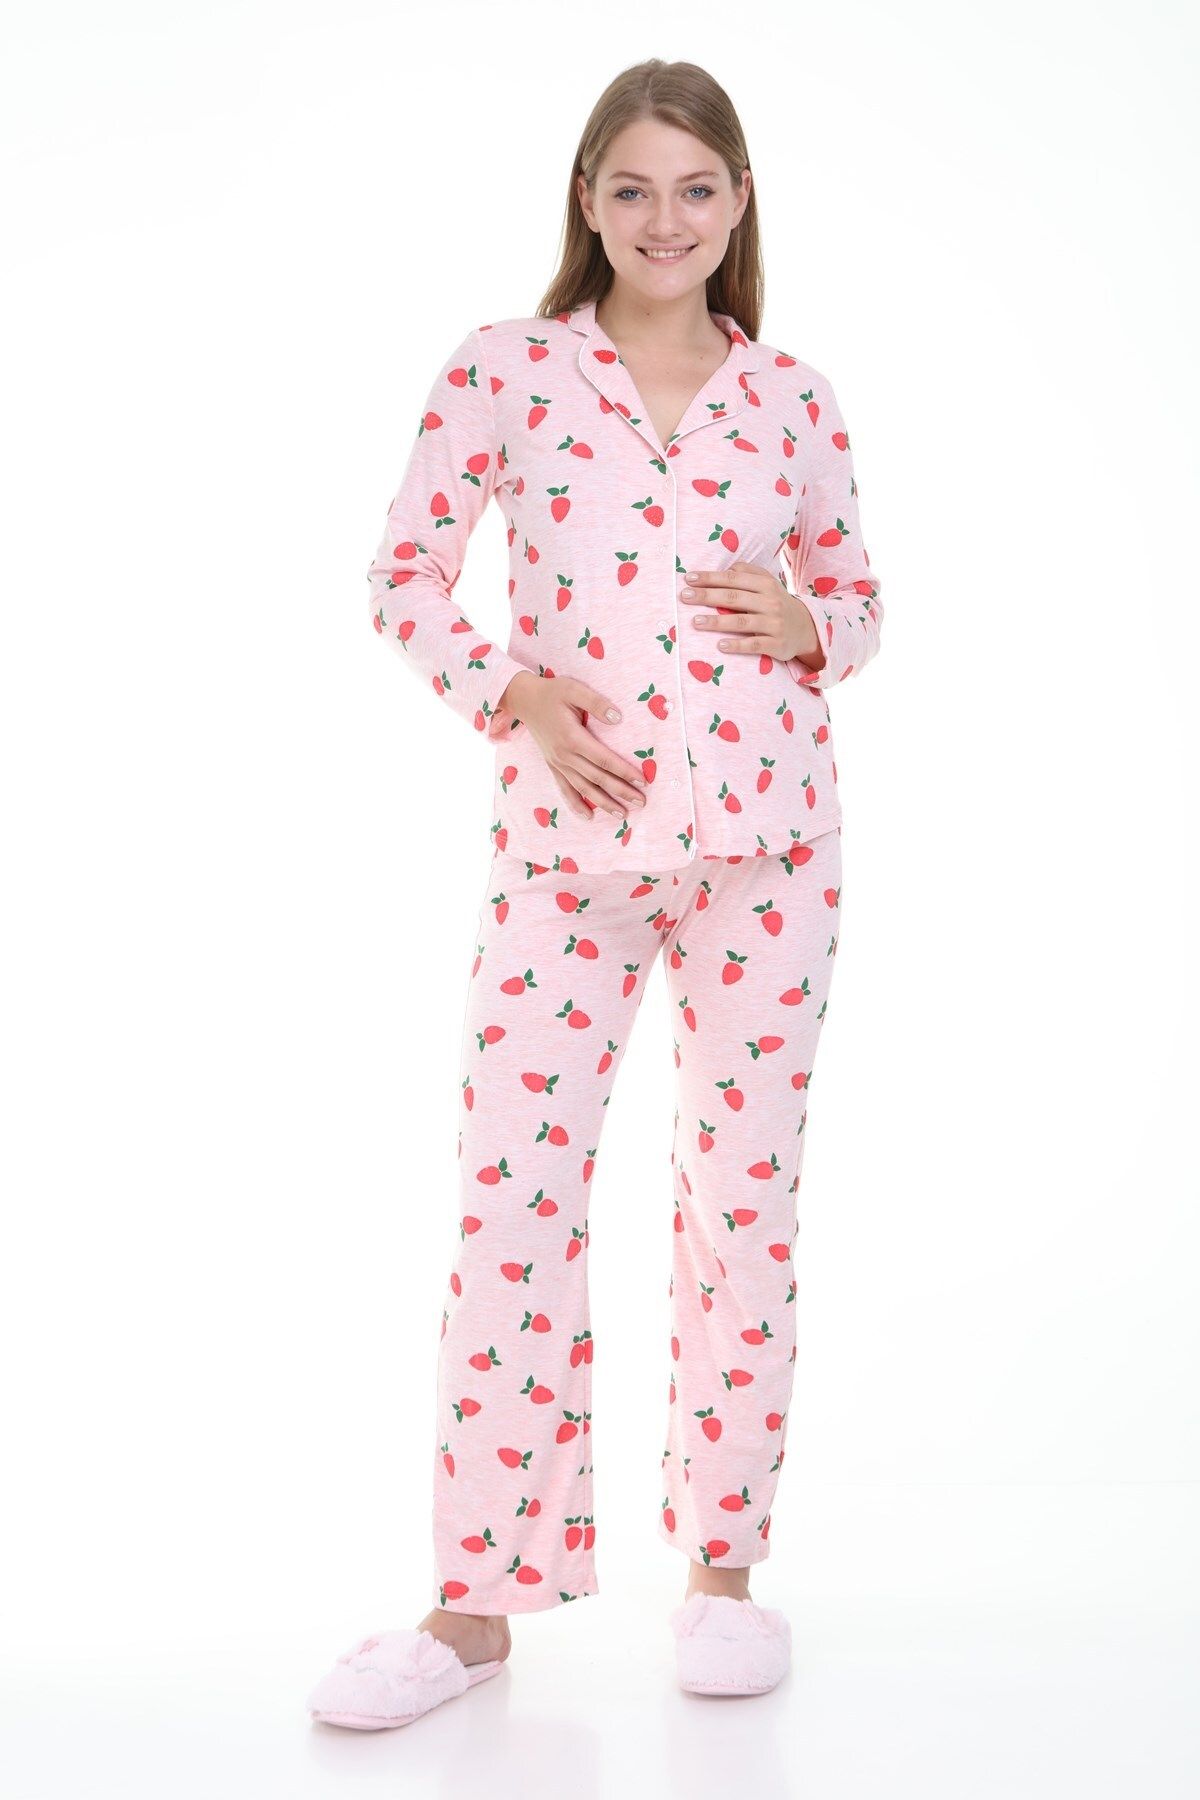 Luvmabelly Myra9531 Düğmeli Biyeli Hamile Pijama Takımı - Pembe